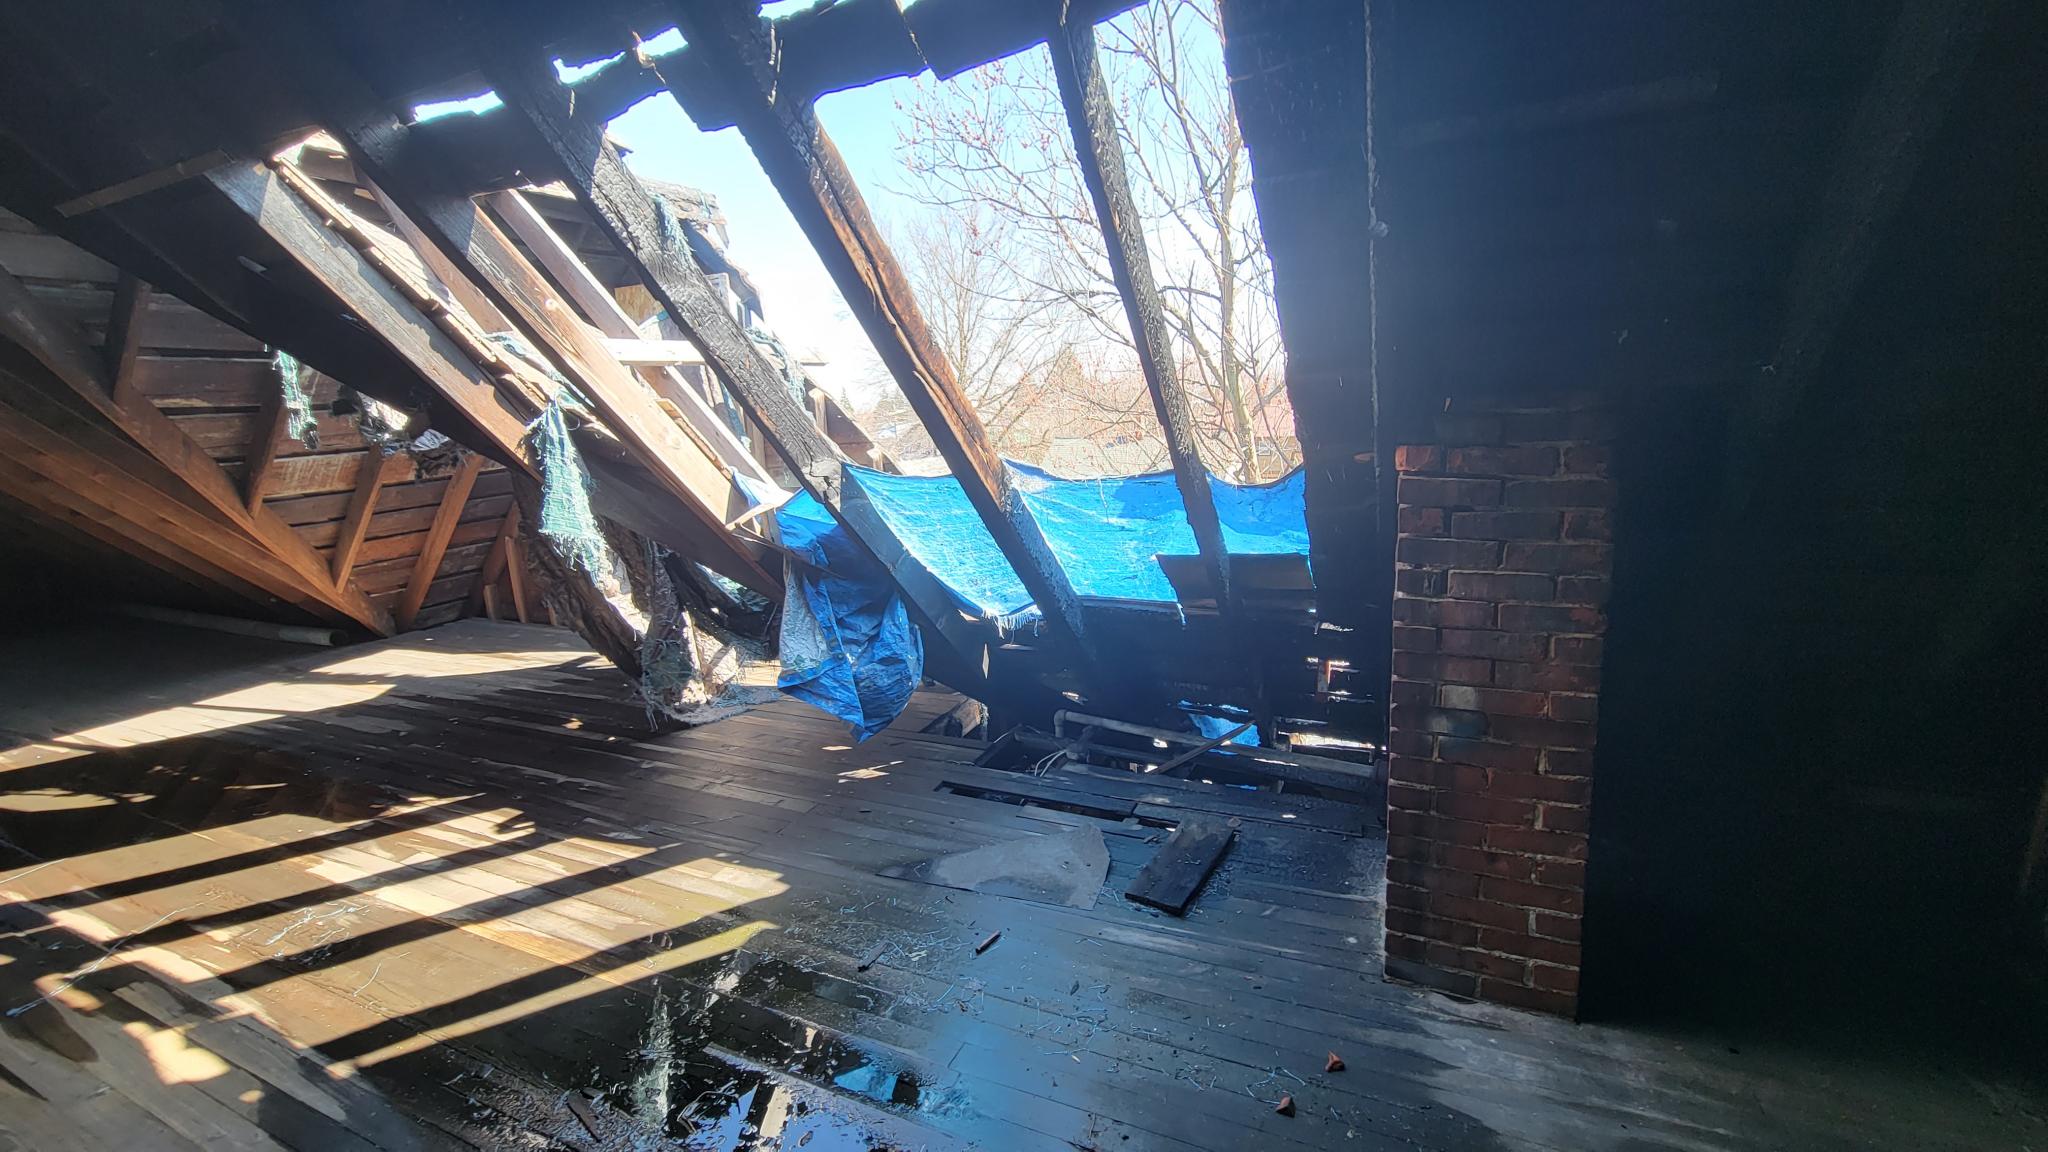 attic fire damage